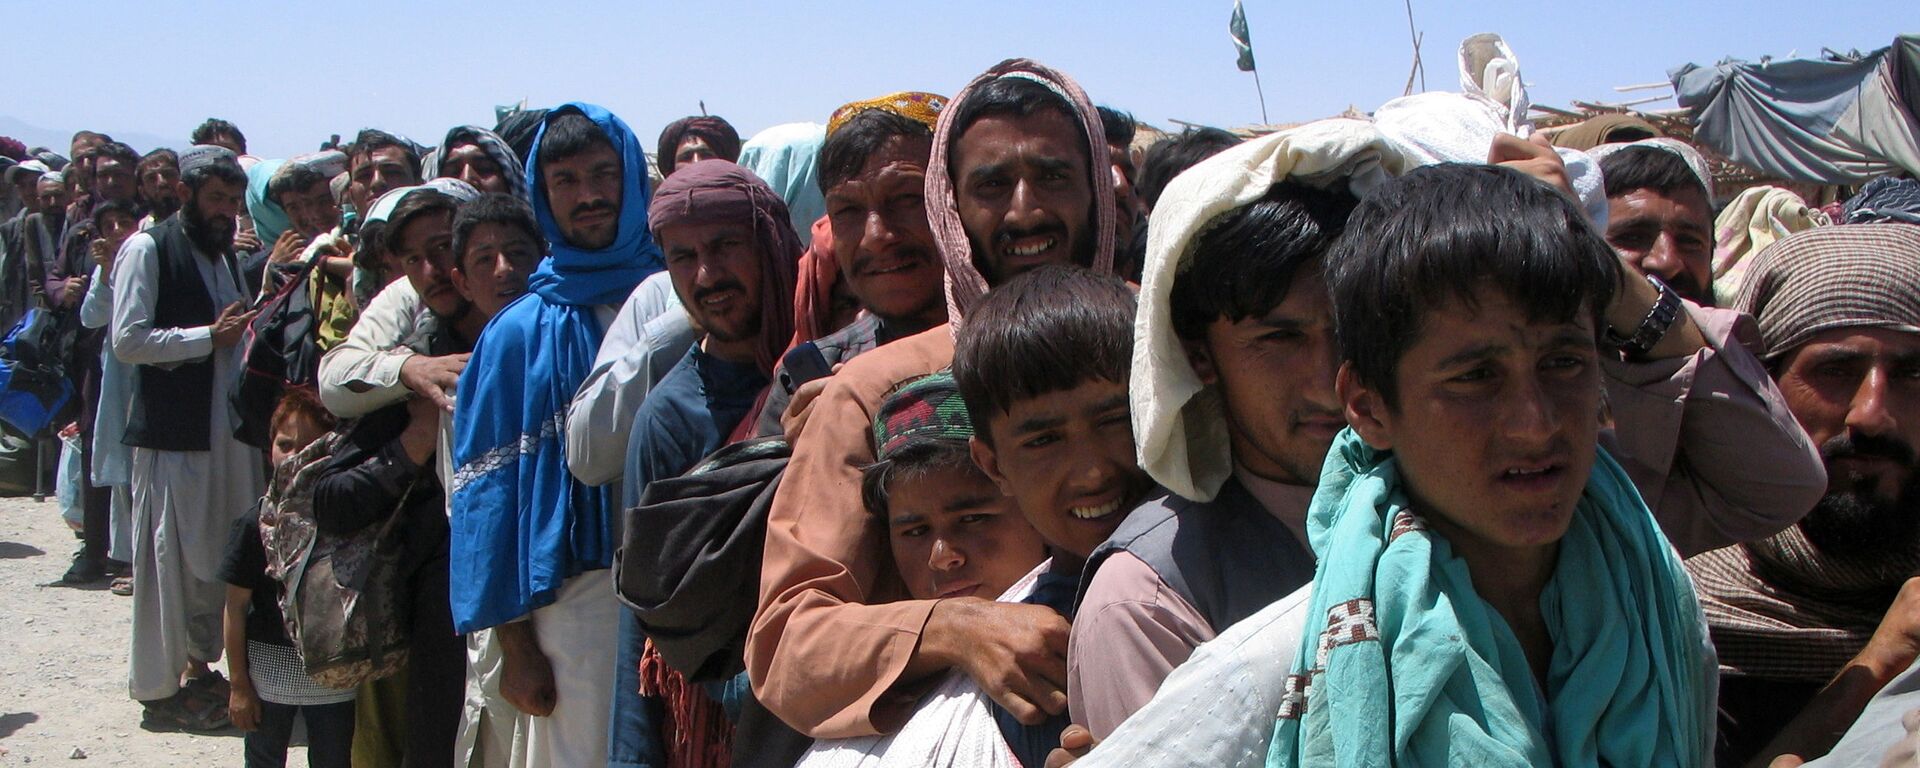 Nhóm người trước trạm kiểm soát Cổng Tình bạn ở Chaman, thị trấn biên giới Pakistan-Afghanistan,  Pakistan - Sputnik Việt Nam, 1920, 22.11.2021